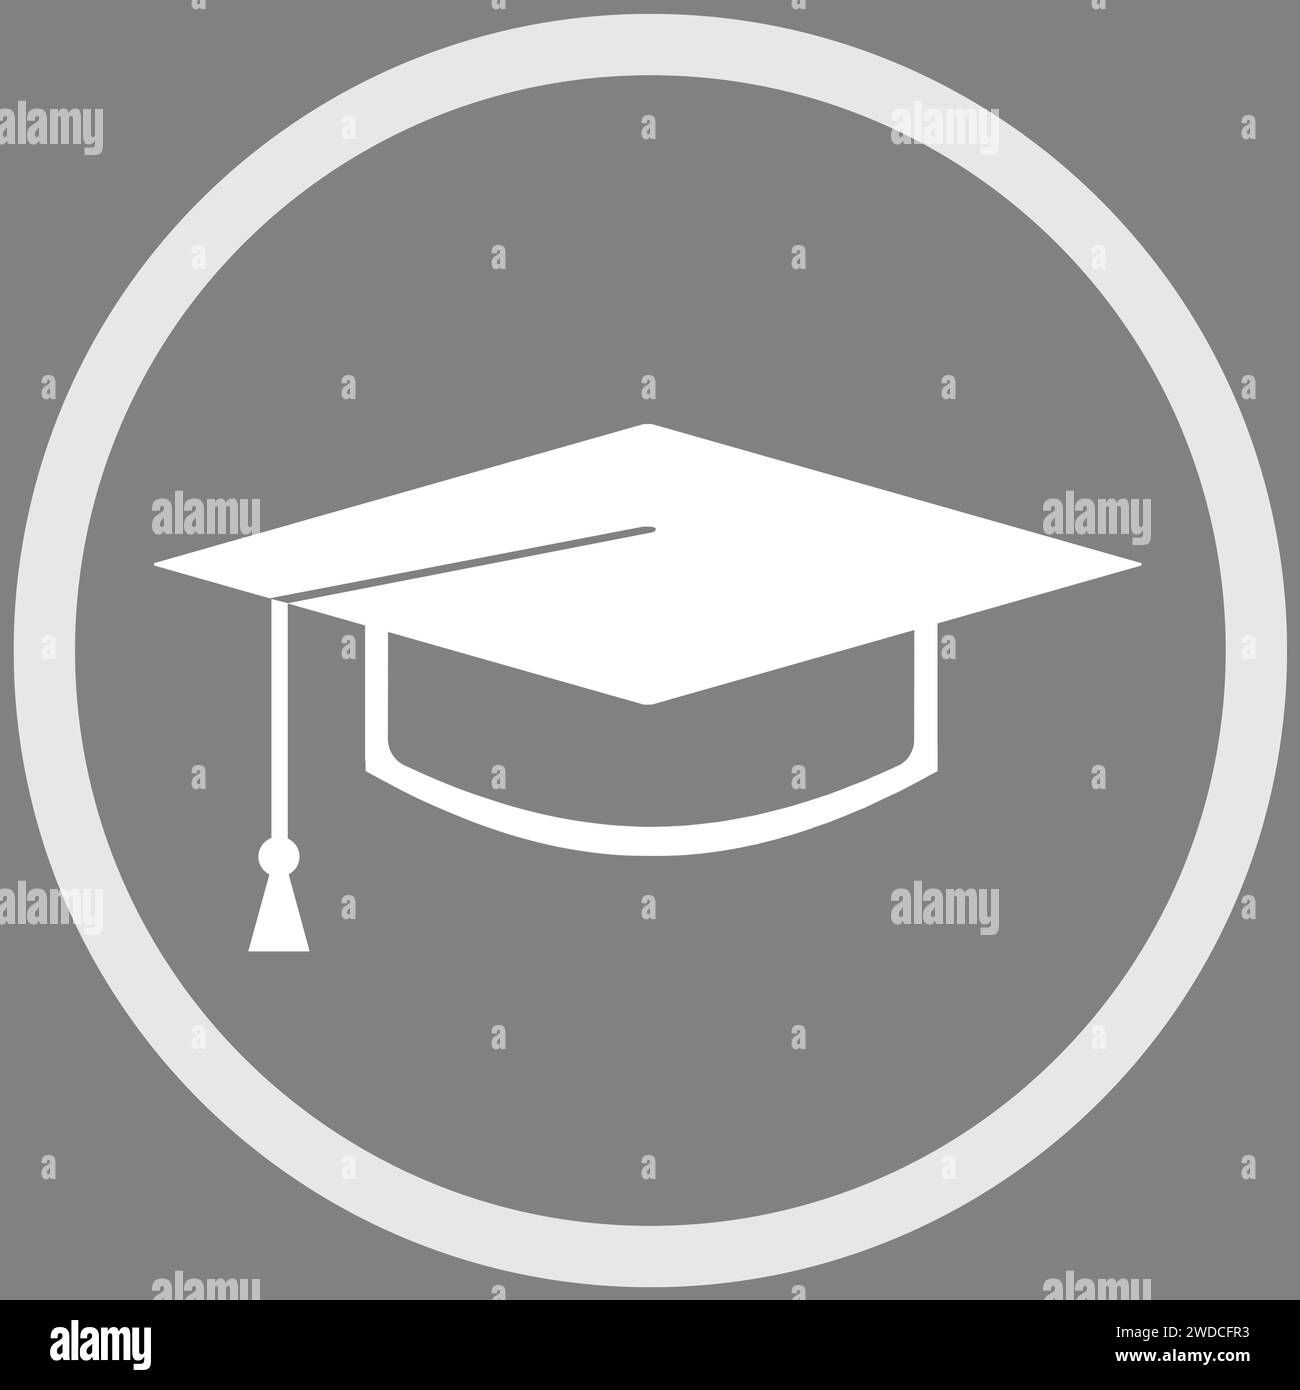 Tappo quadrato per uso accademico nella cornice, illustrazione su sfondo grigio Foto Stock